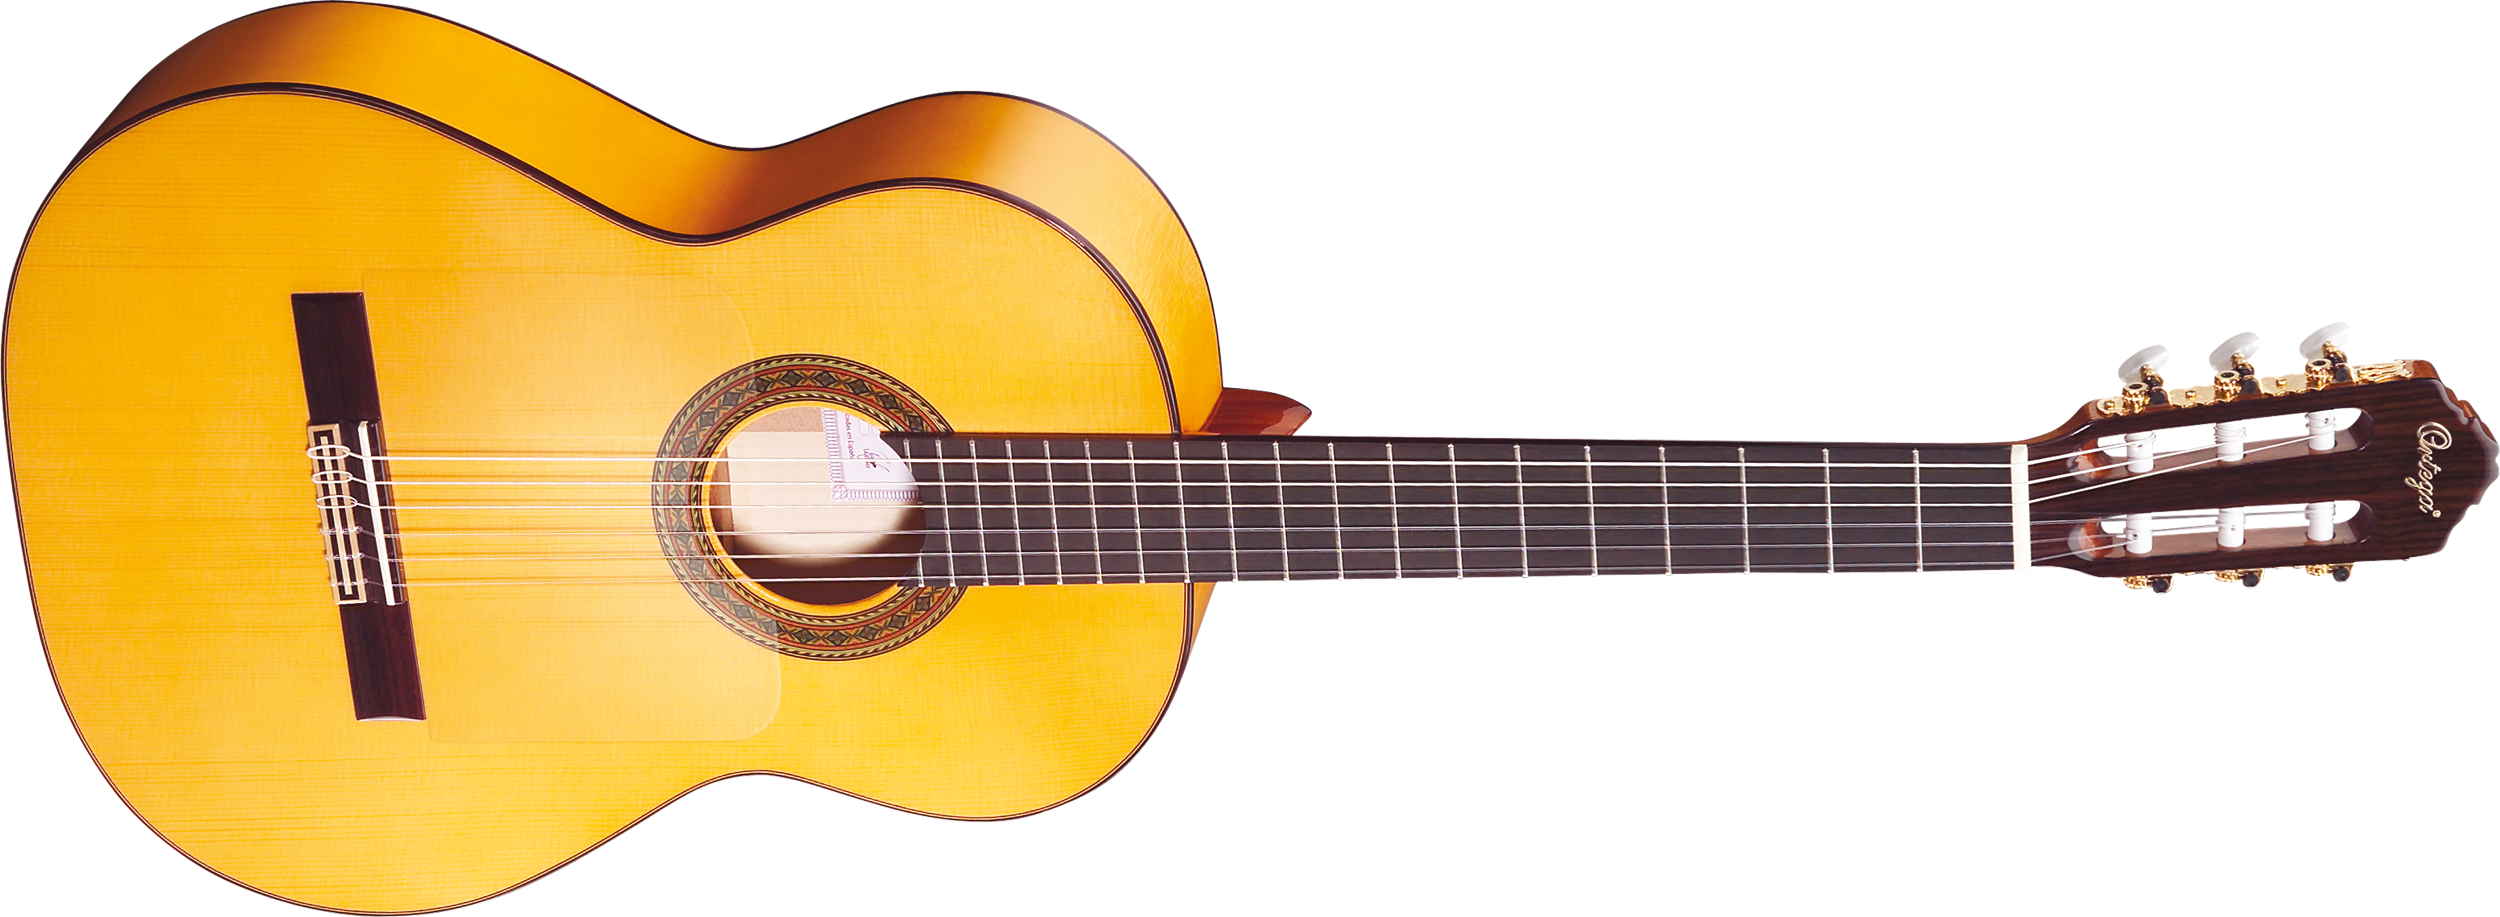 Guitarra de madera PNG imagen Transparente